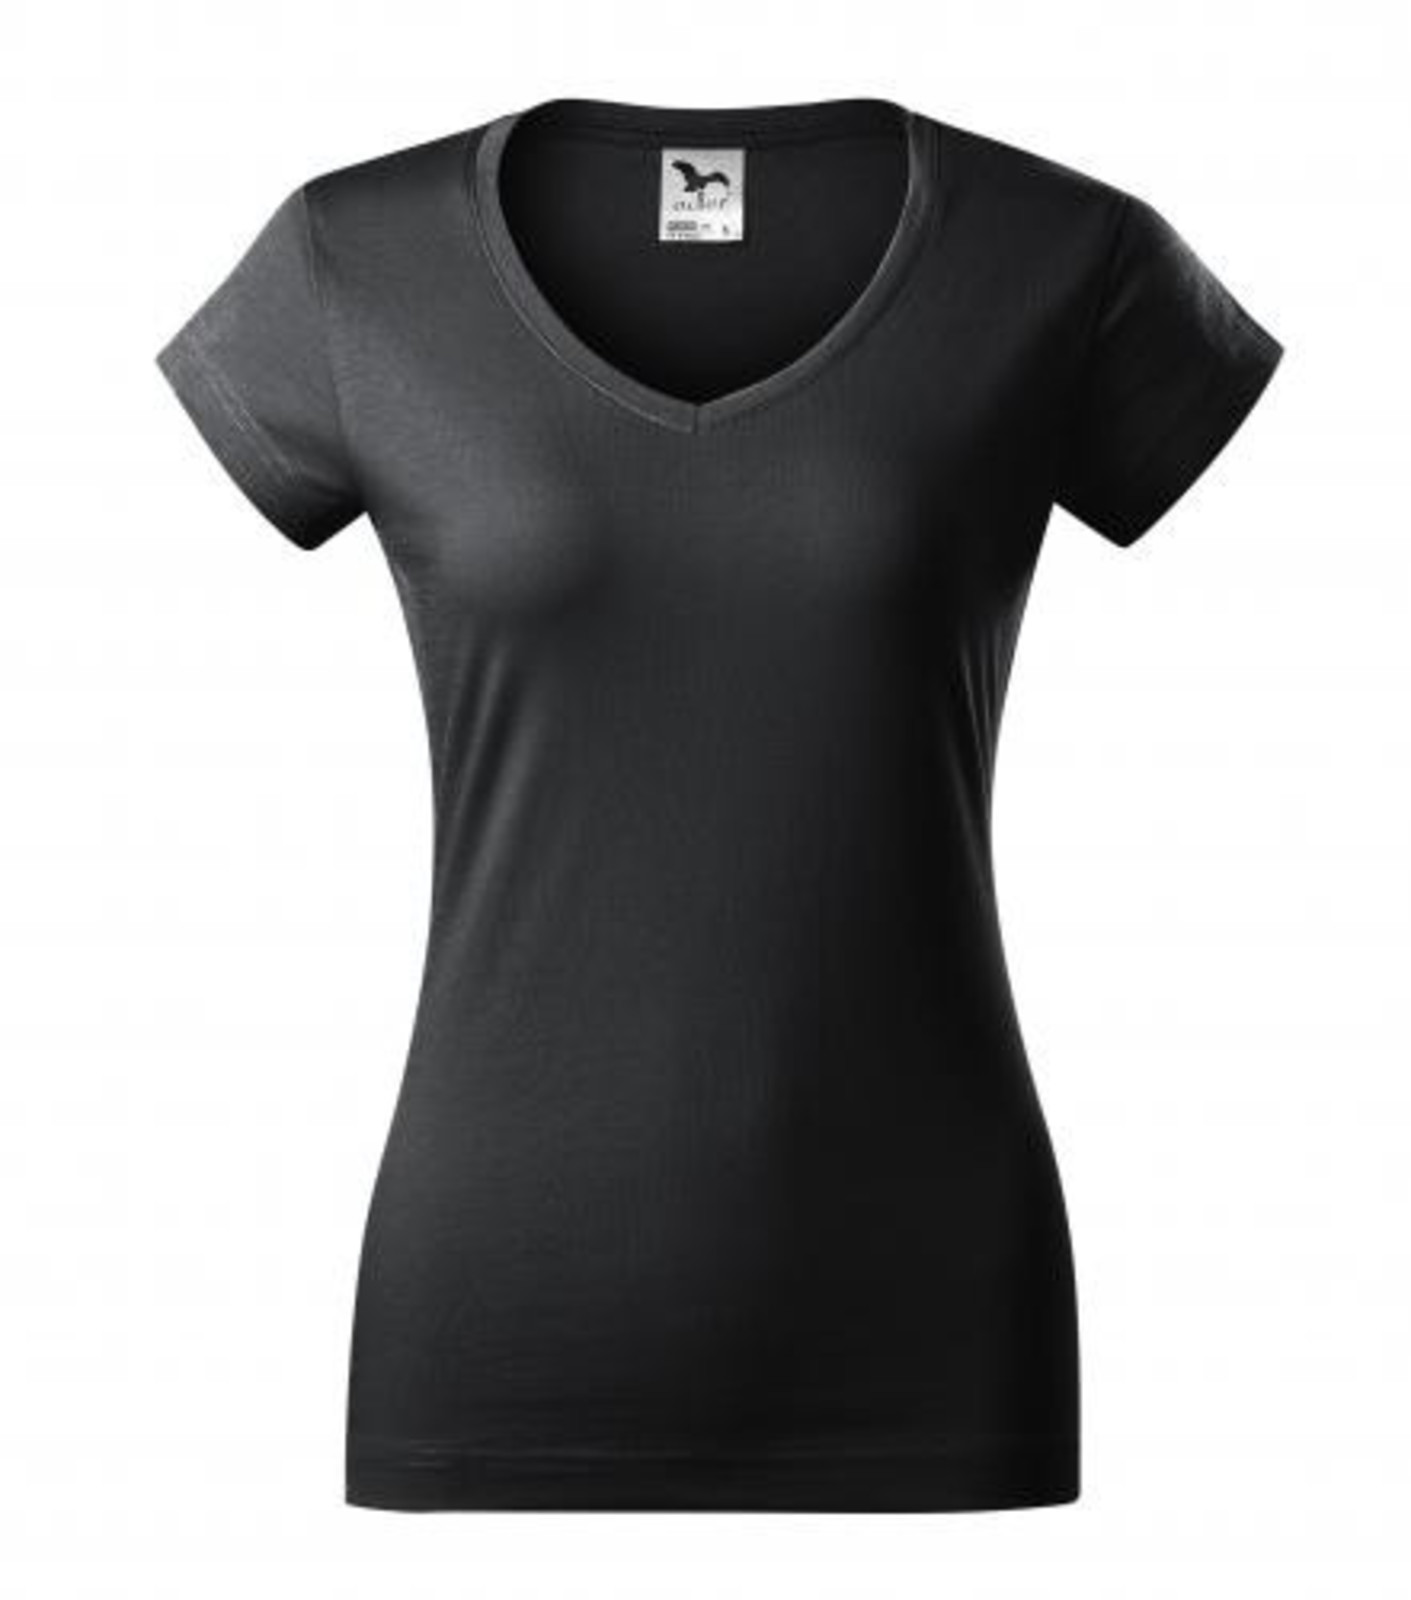 Dámske tričko s V výstrihom Adler Fit V-Neck 162 - veľkosť: XXL, farba: šedá ebony